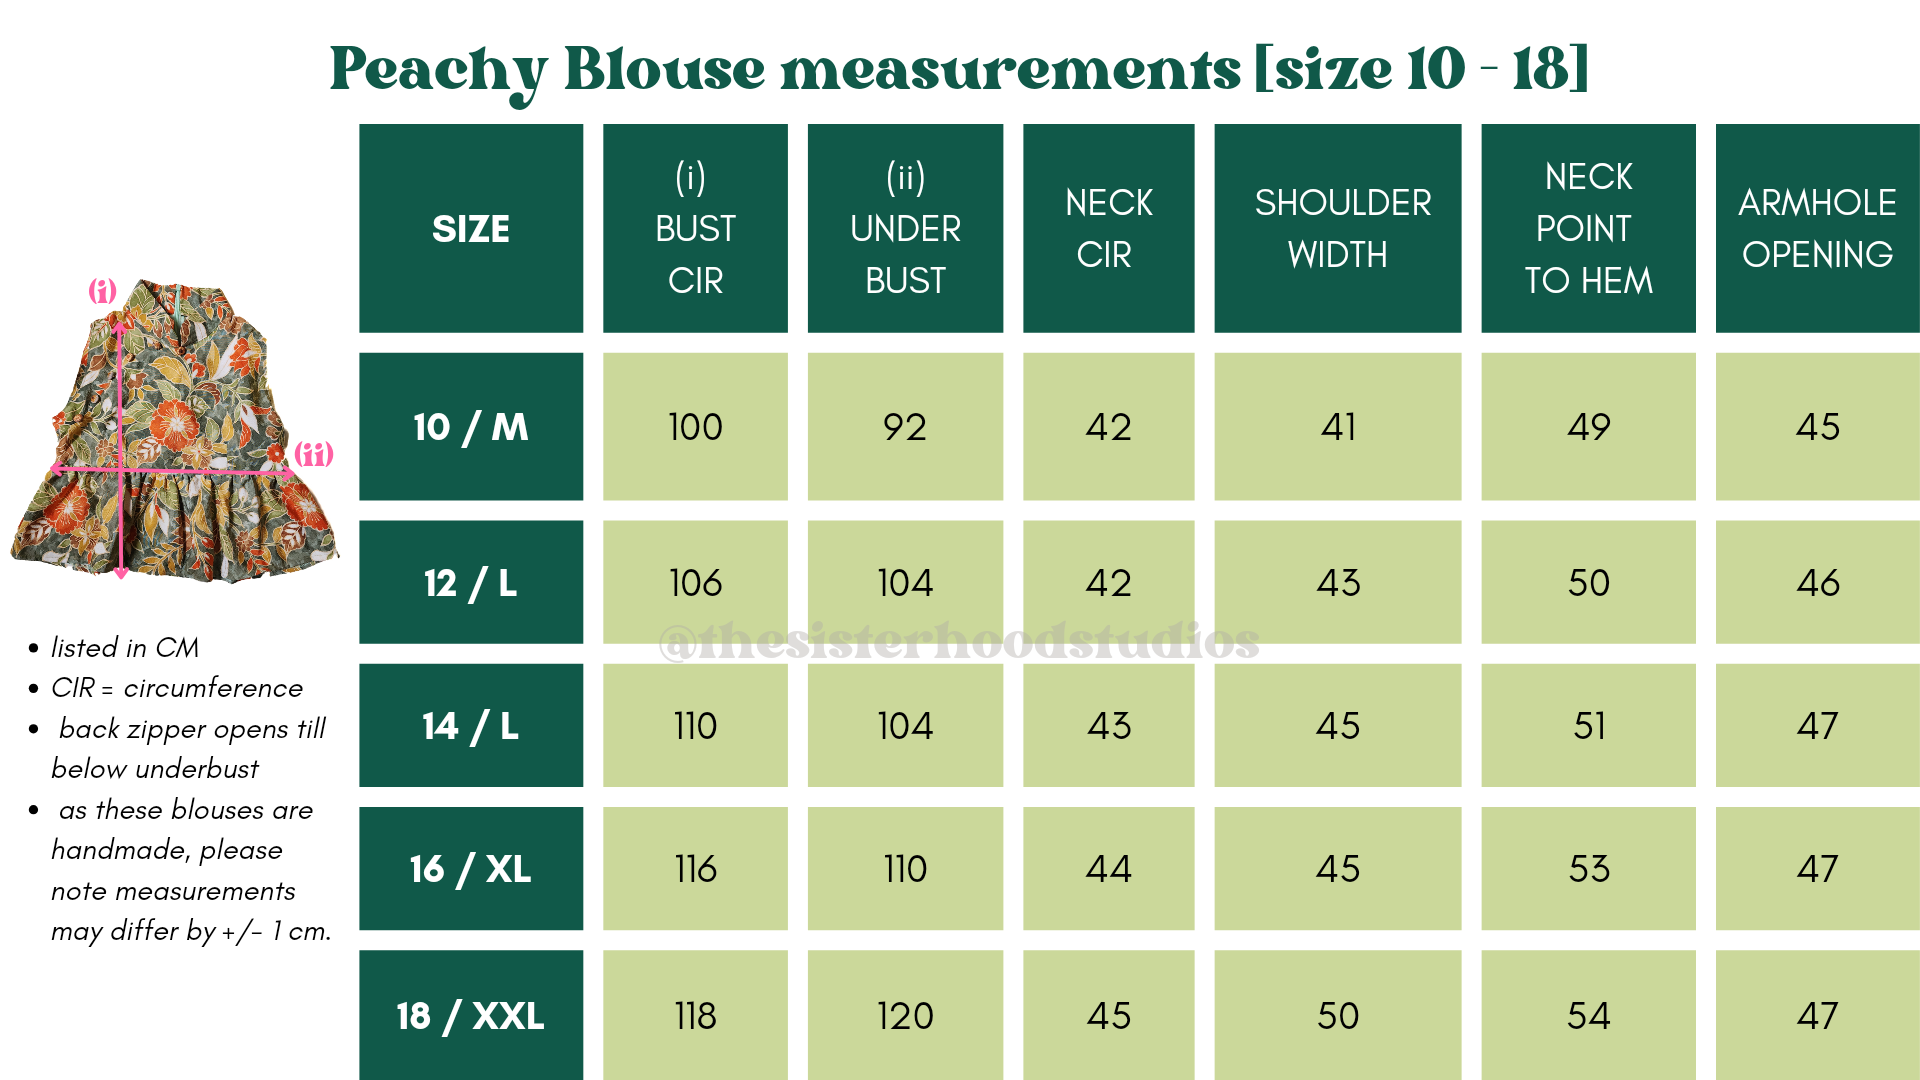 PB measurements 10-18